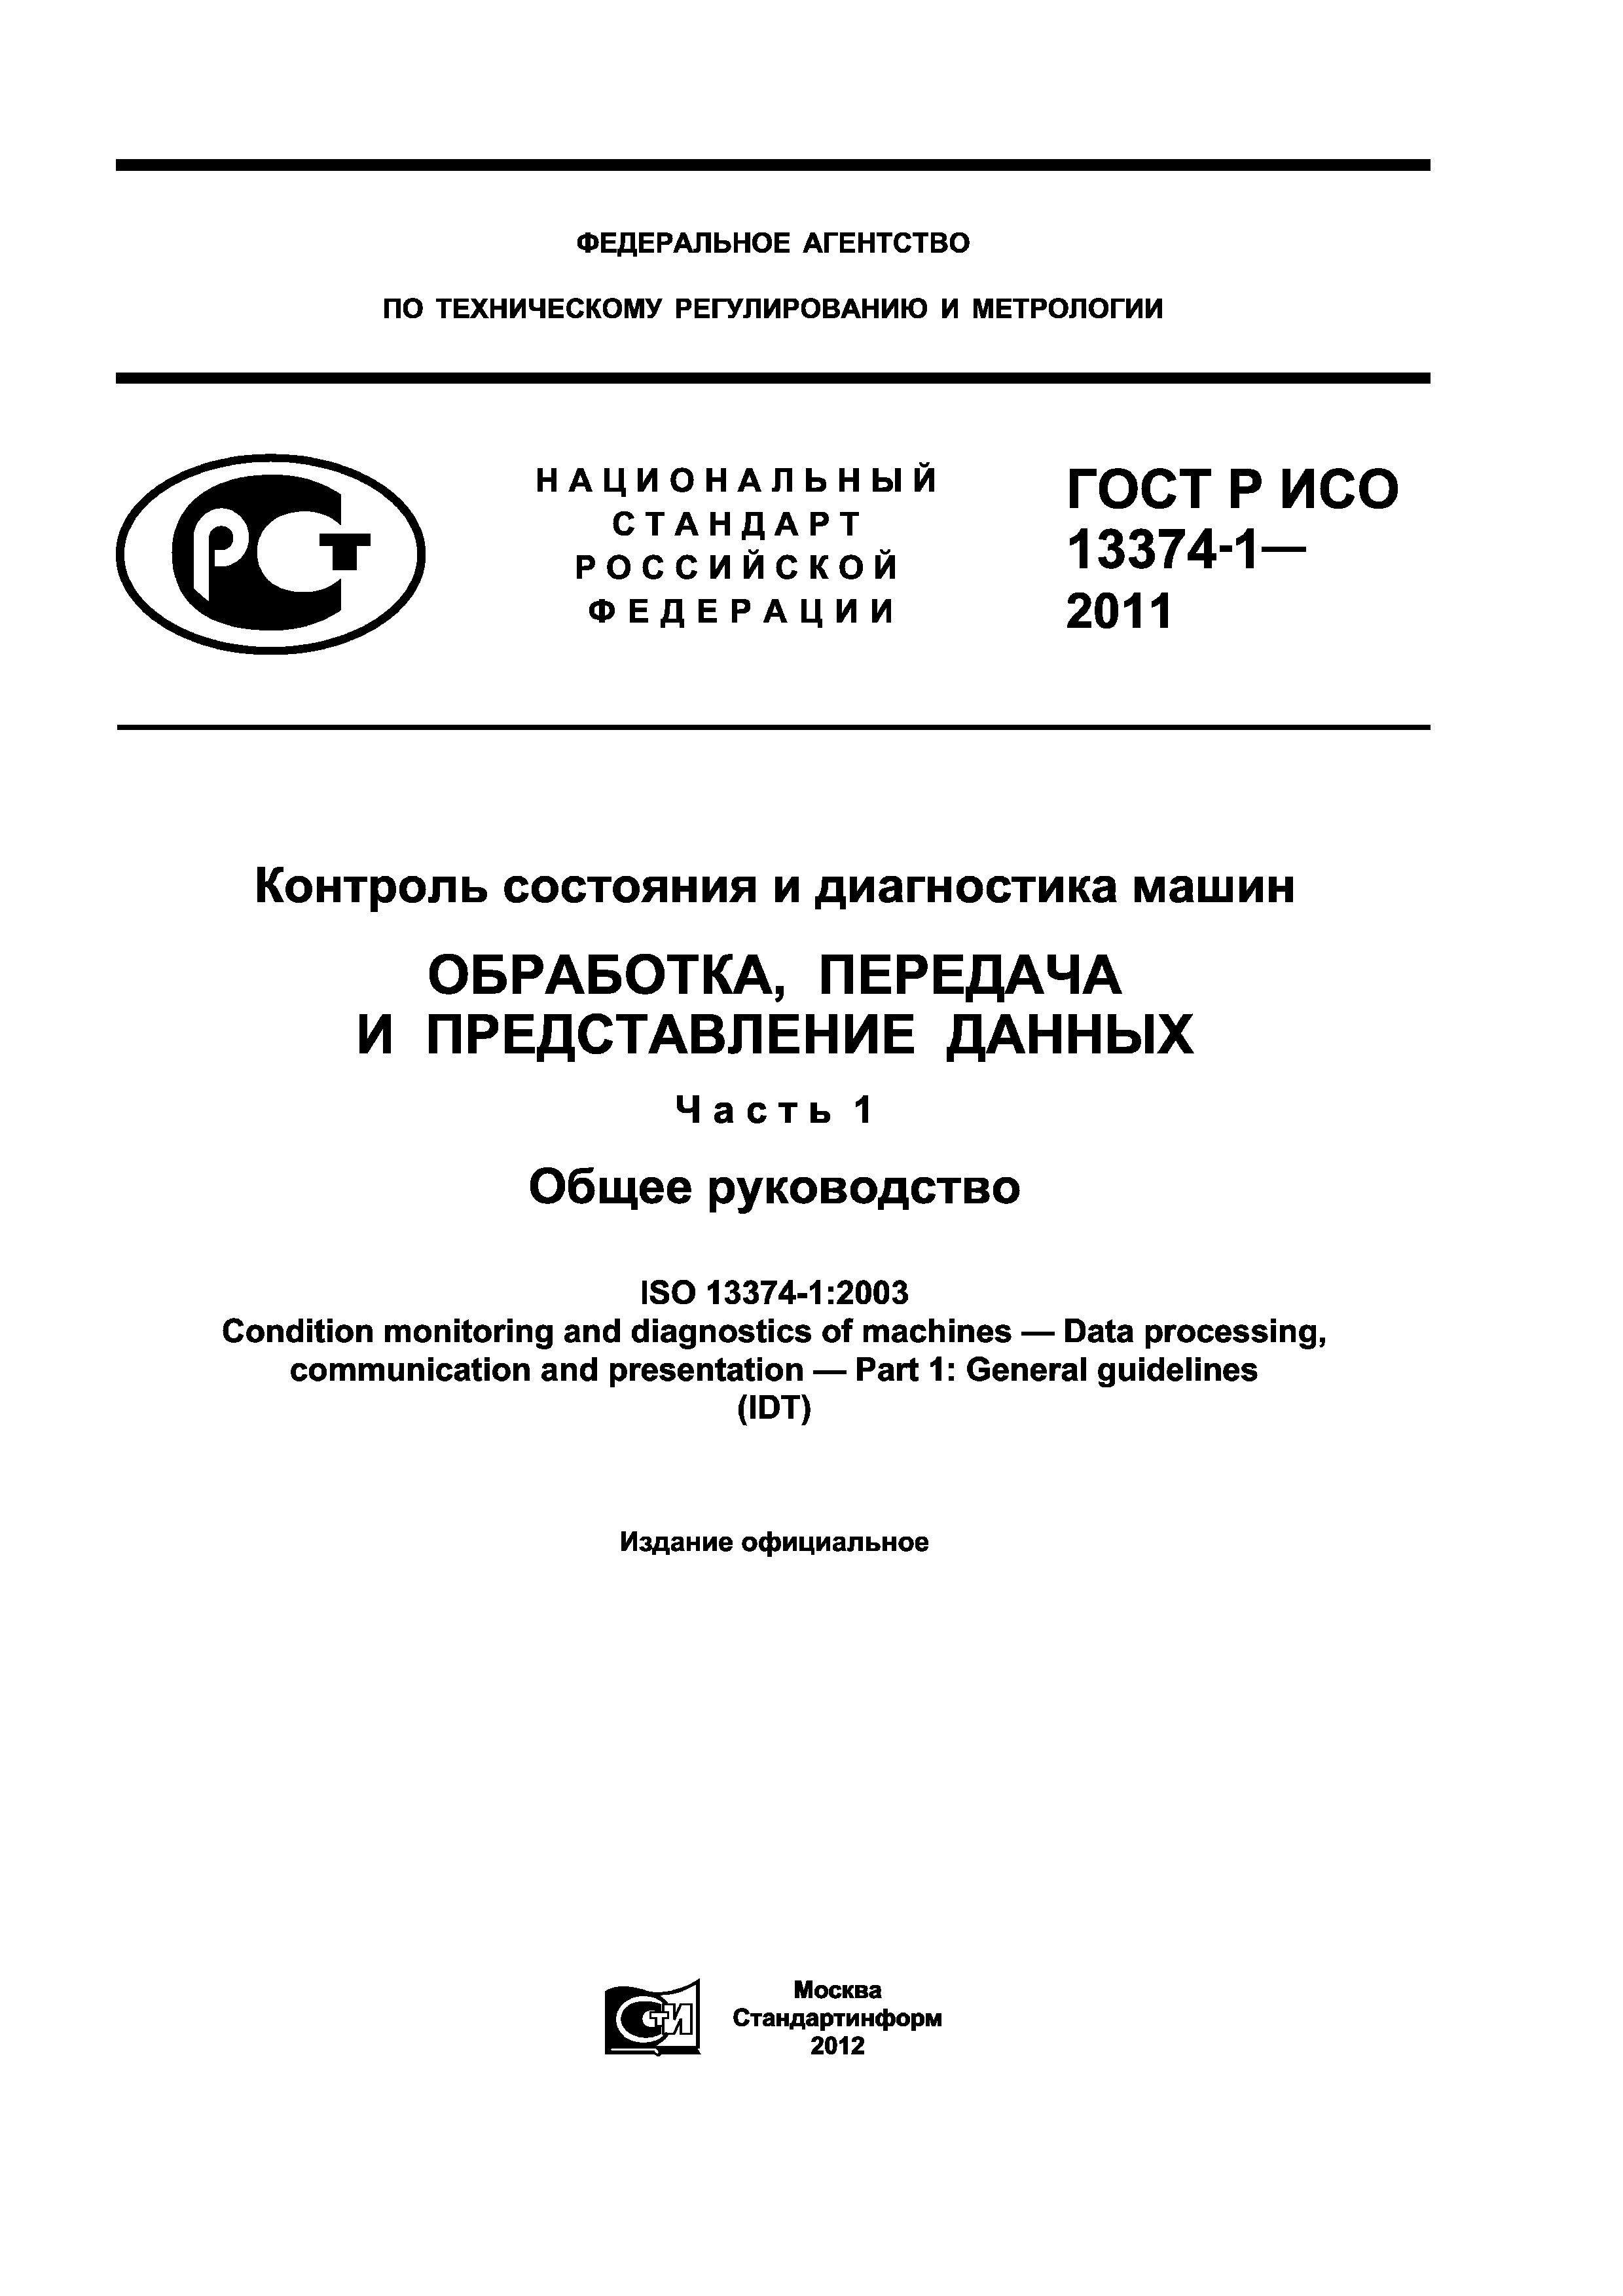 ГОСТ Р ИСО 13374-1-2011